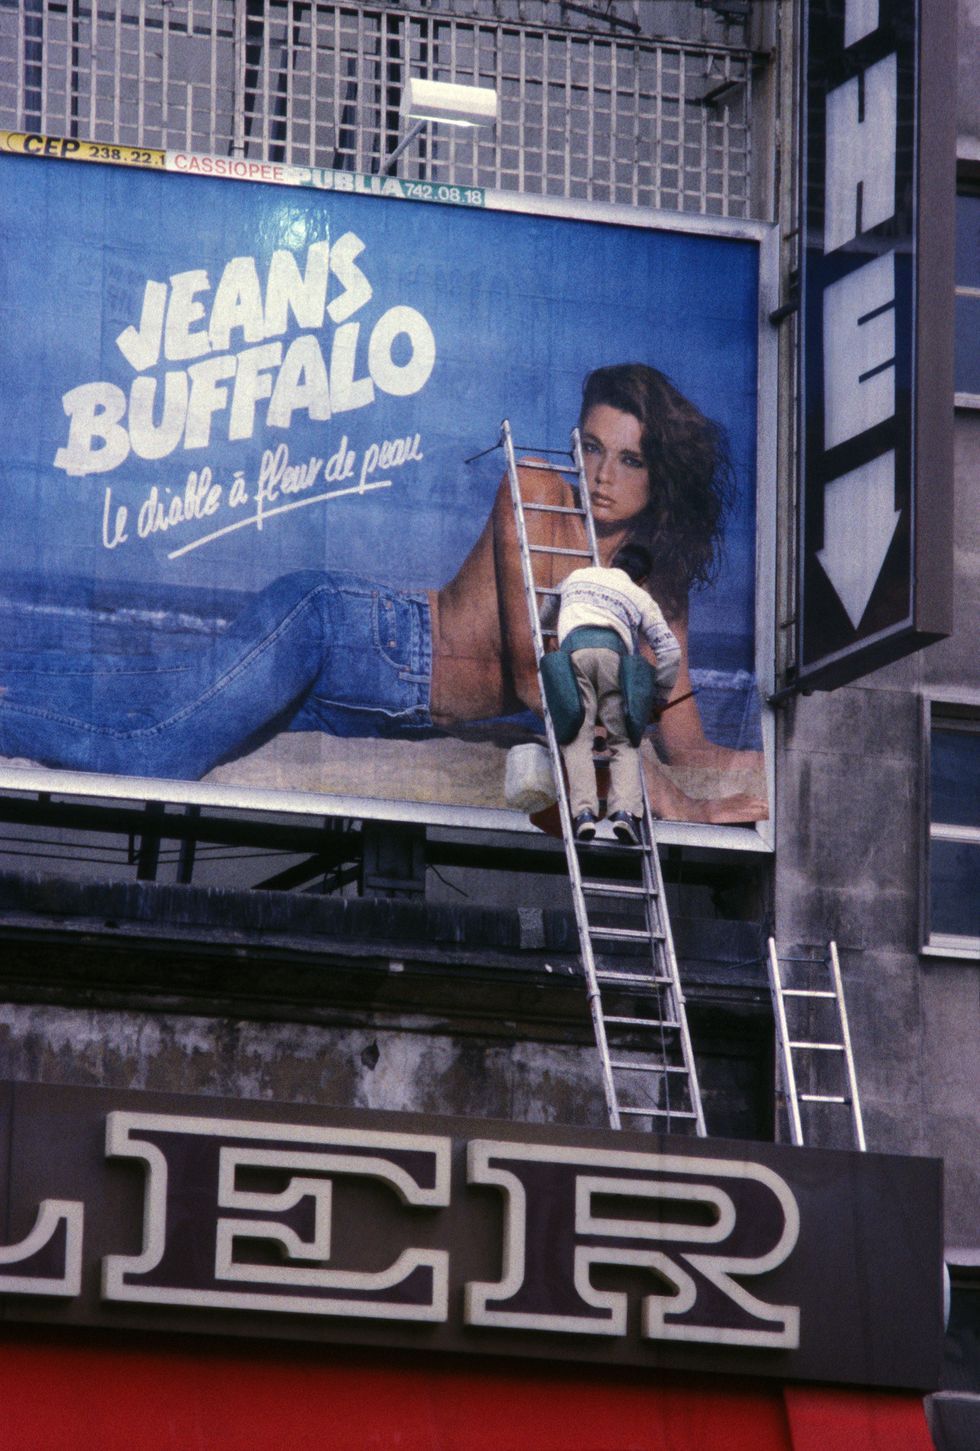 Affiche publicitaire pour les jeans Buffalo